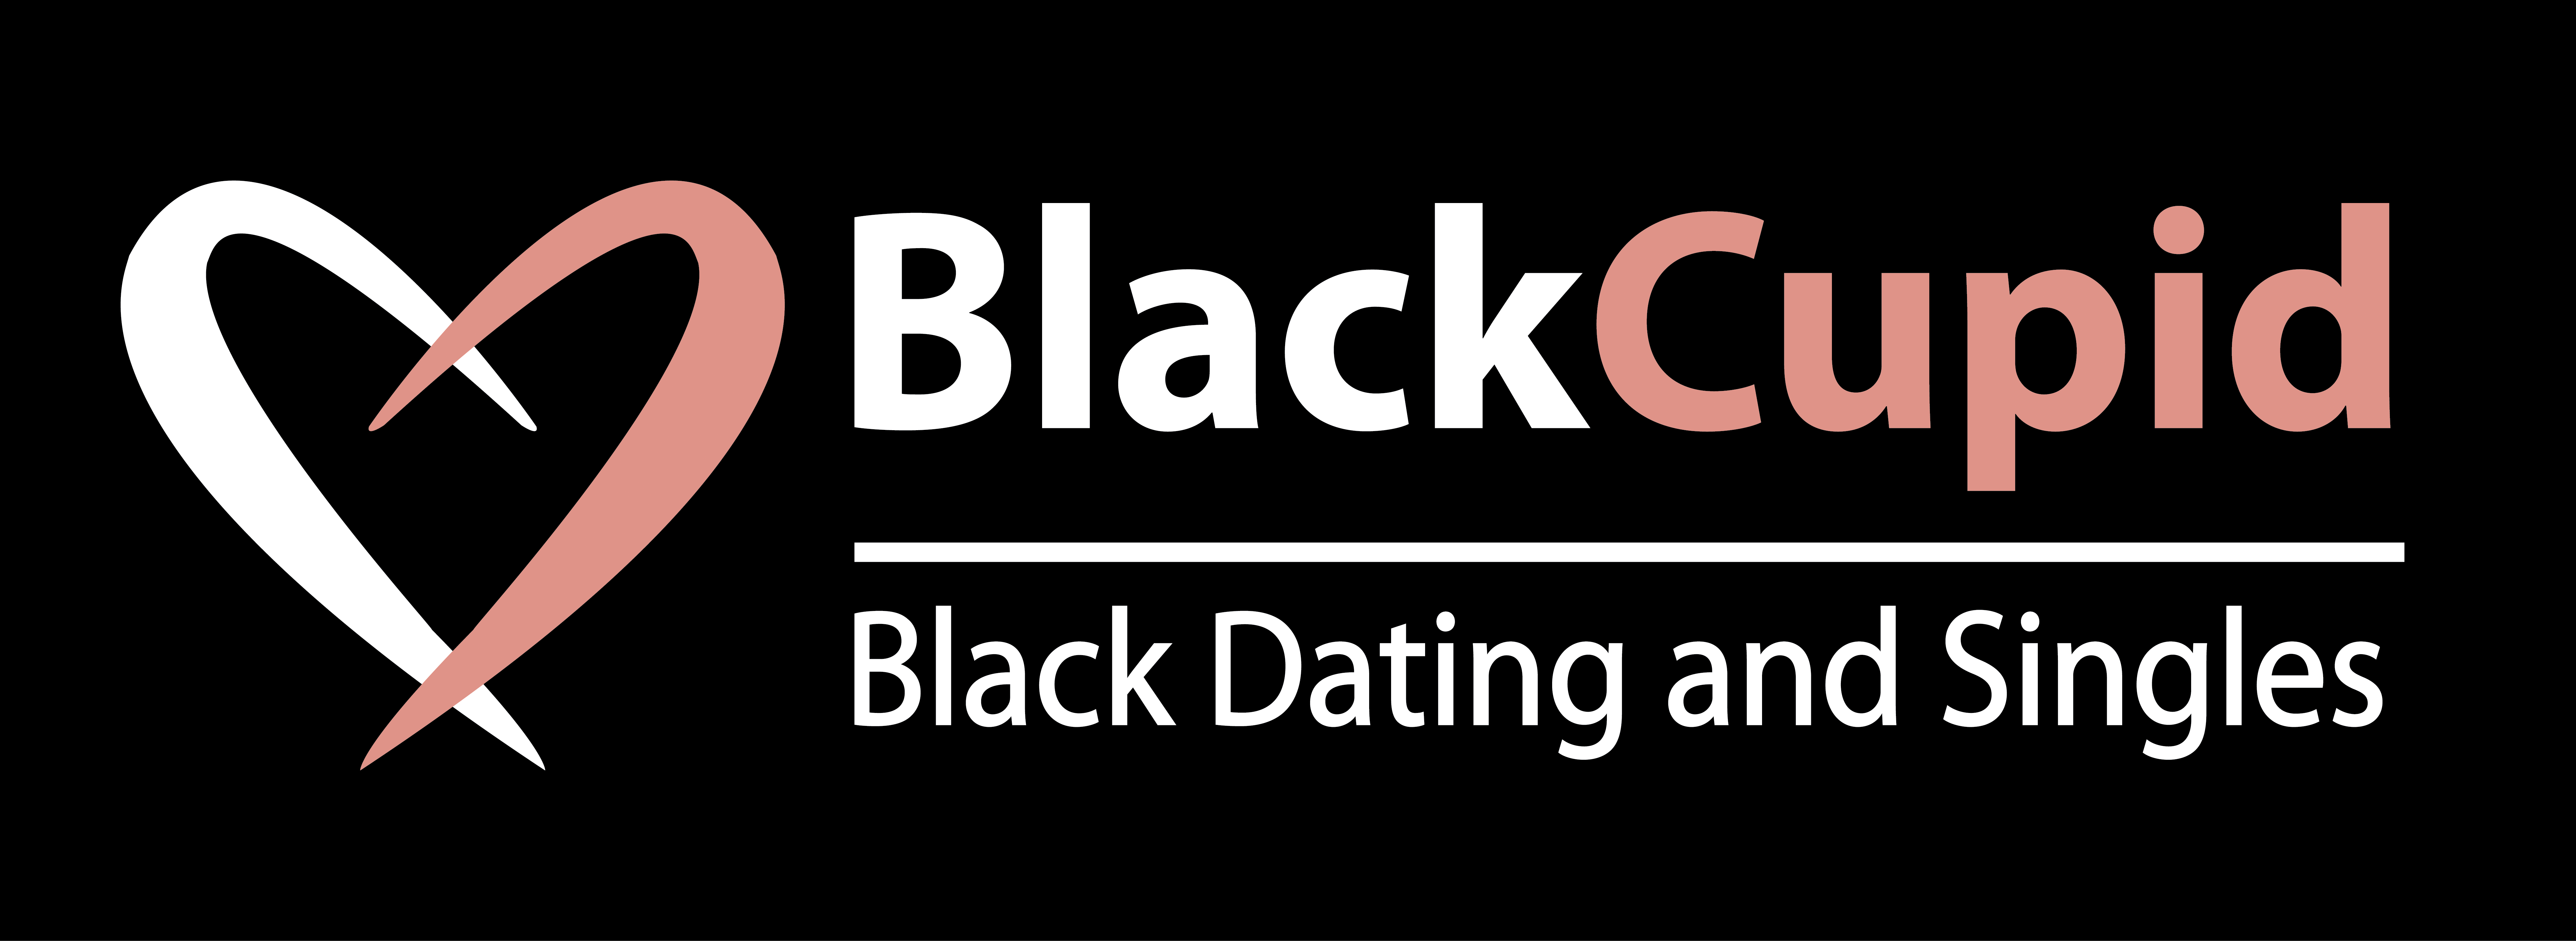 Best black dating sites in Melbourne